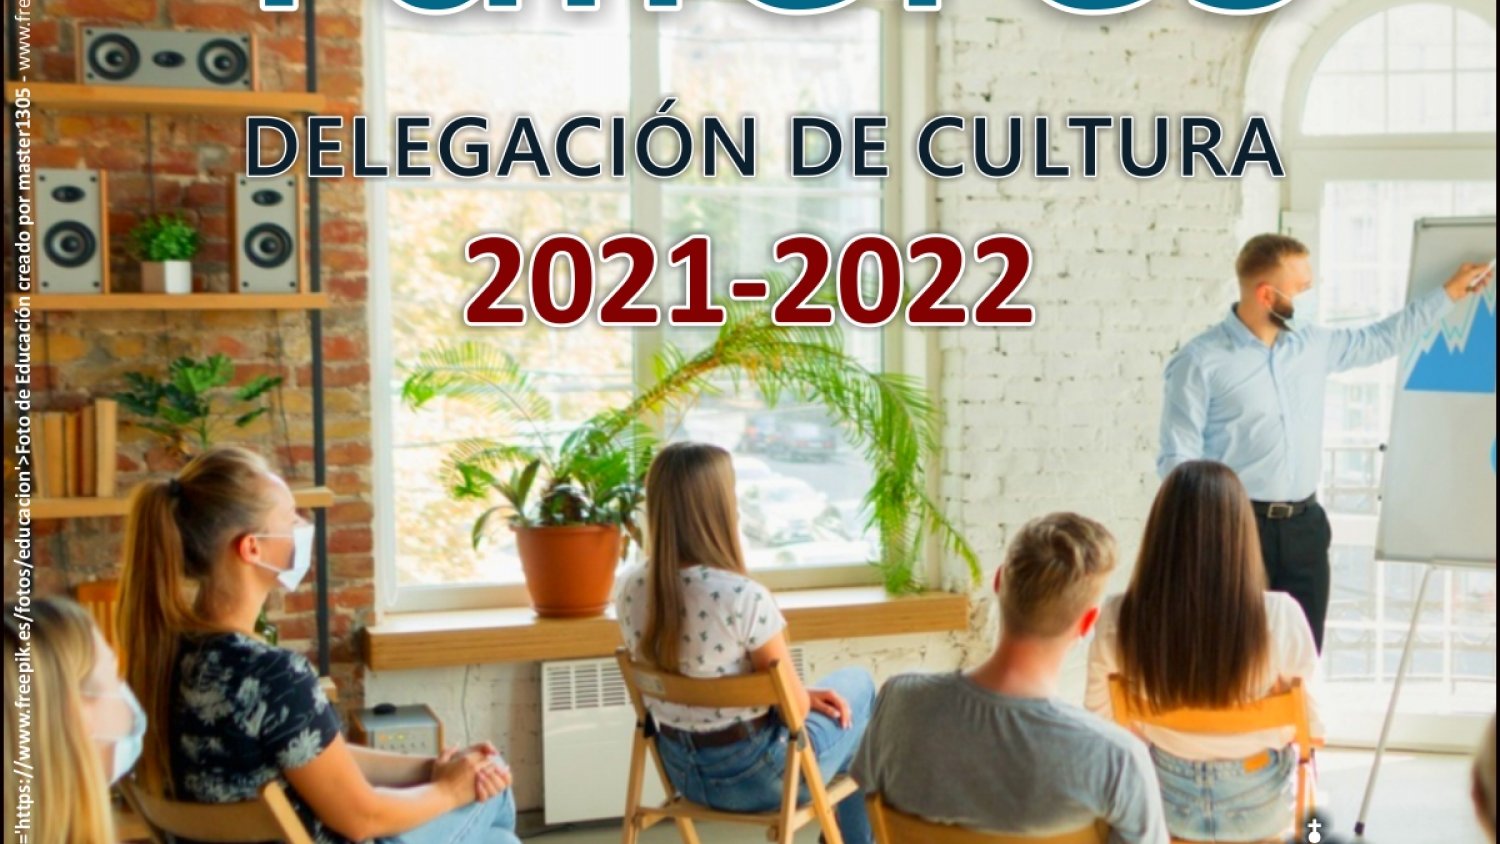 Abierta la inscripción para los cursos y talleres de Cultura de Estepona 2021/2022